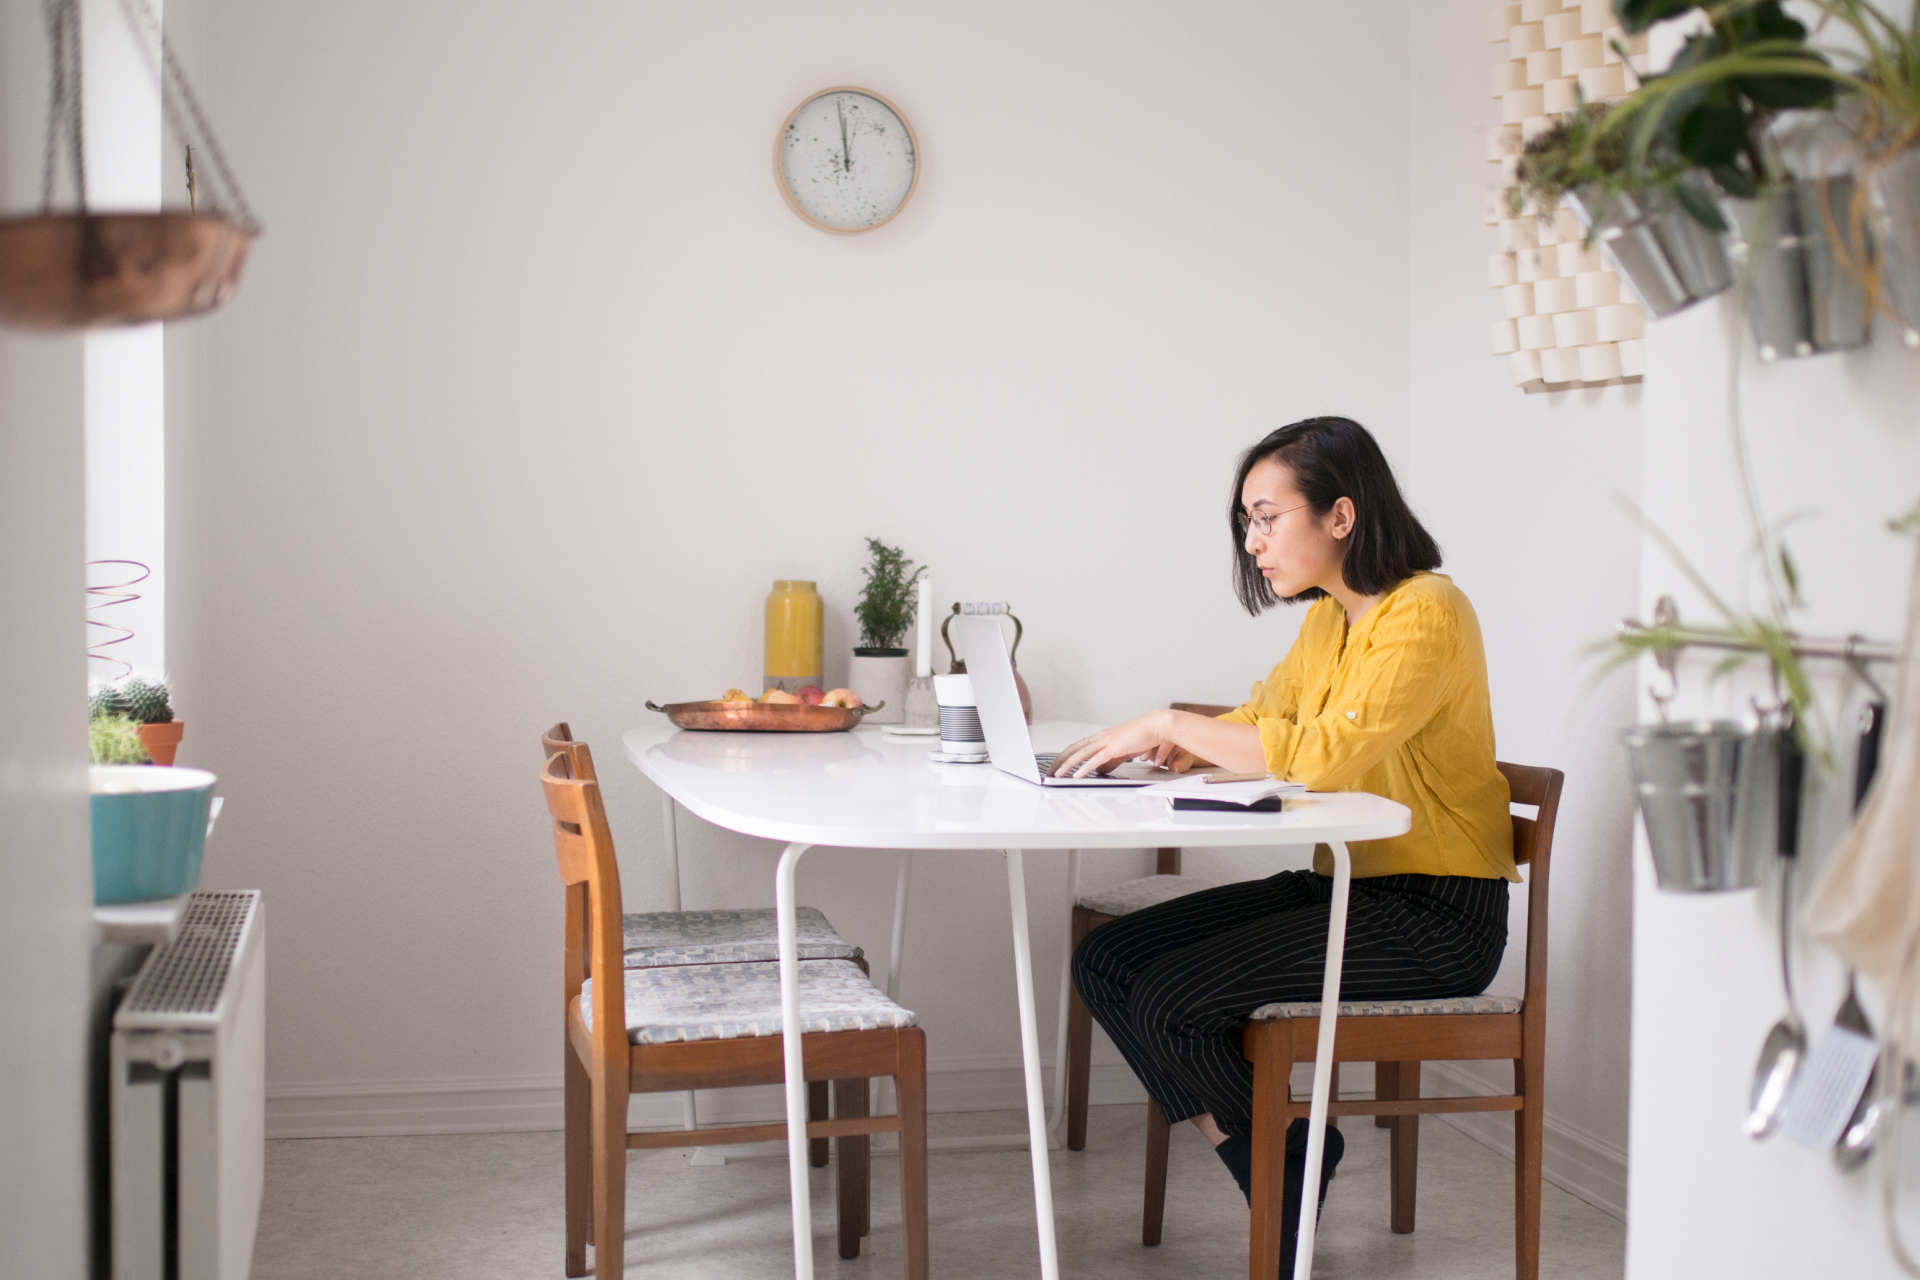 Uma empreendedora solo administrando seu negócio de dropshipping do conforto de sua casa